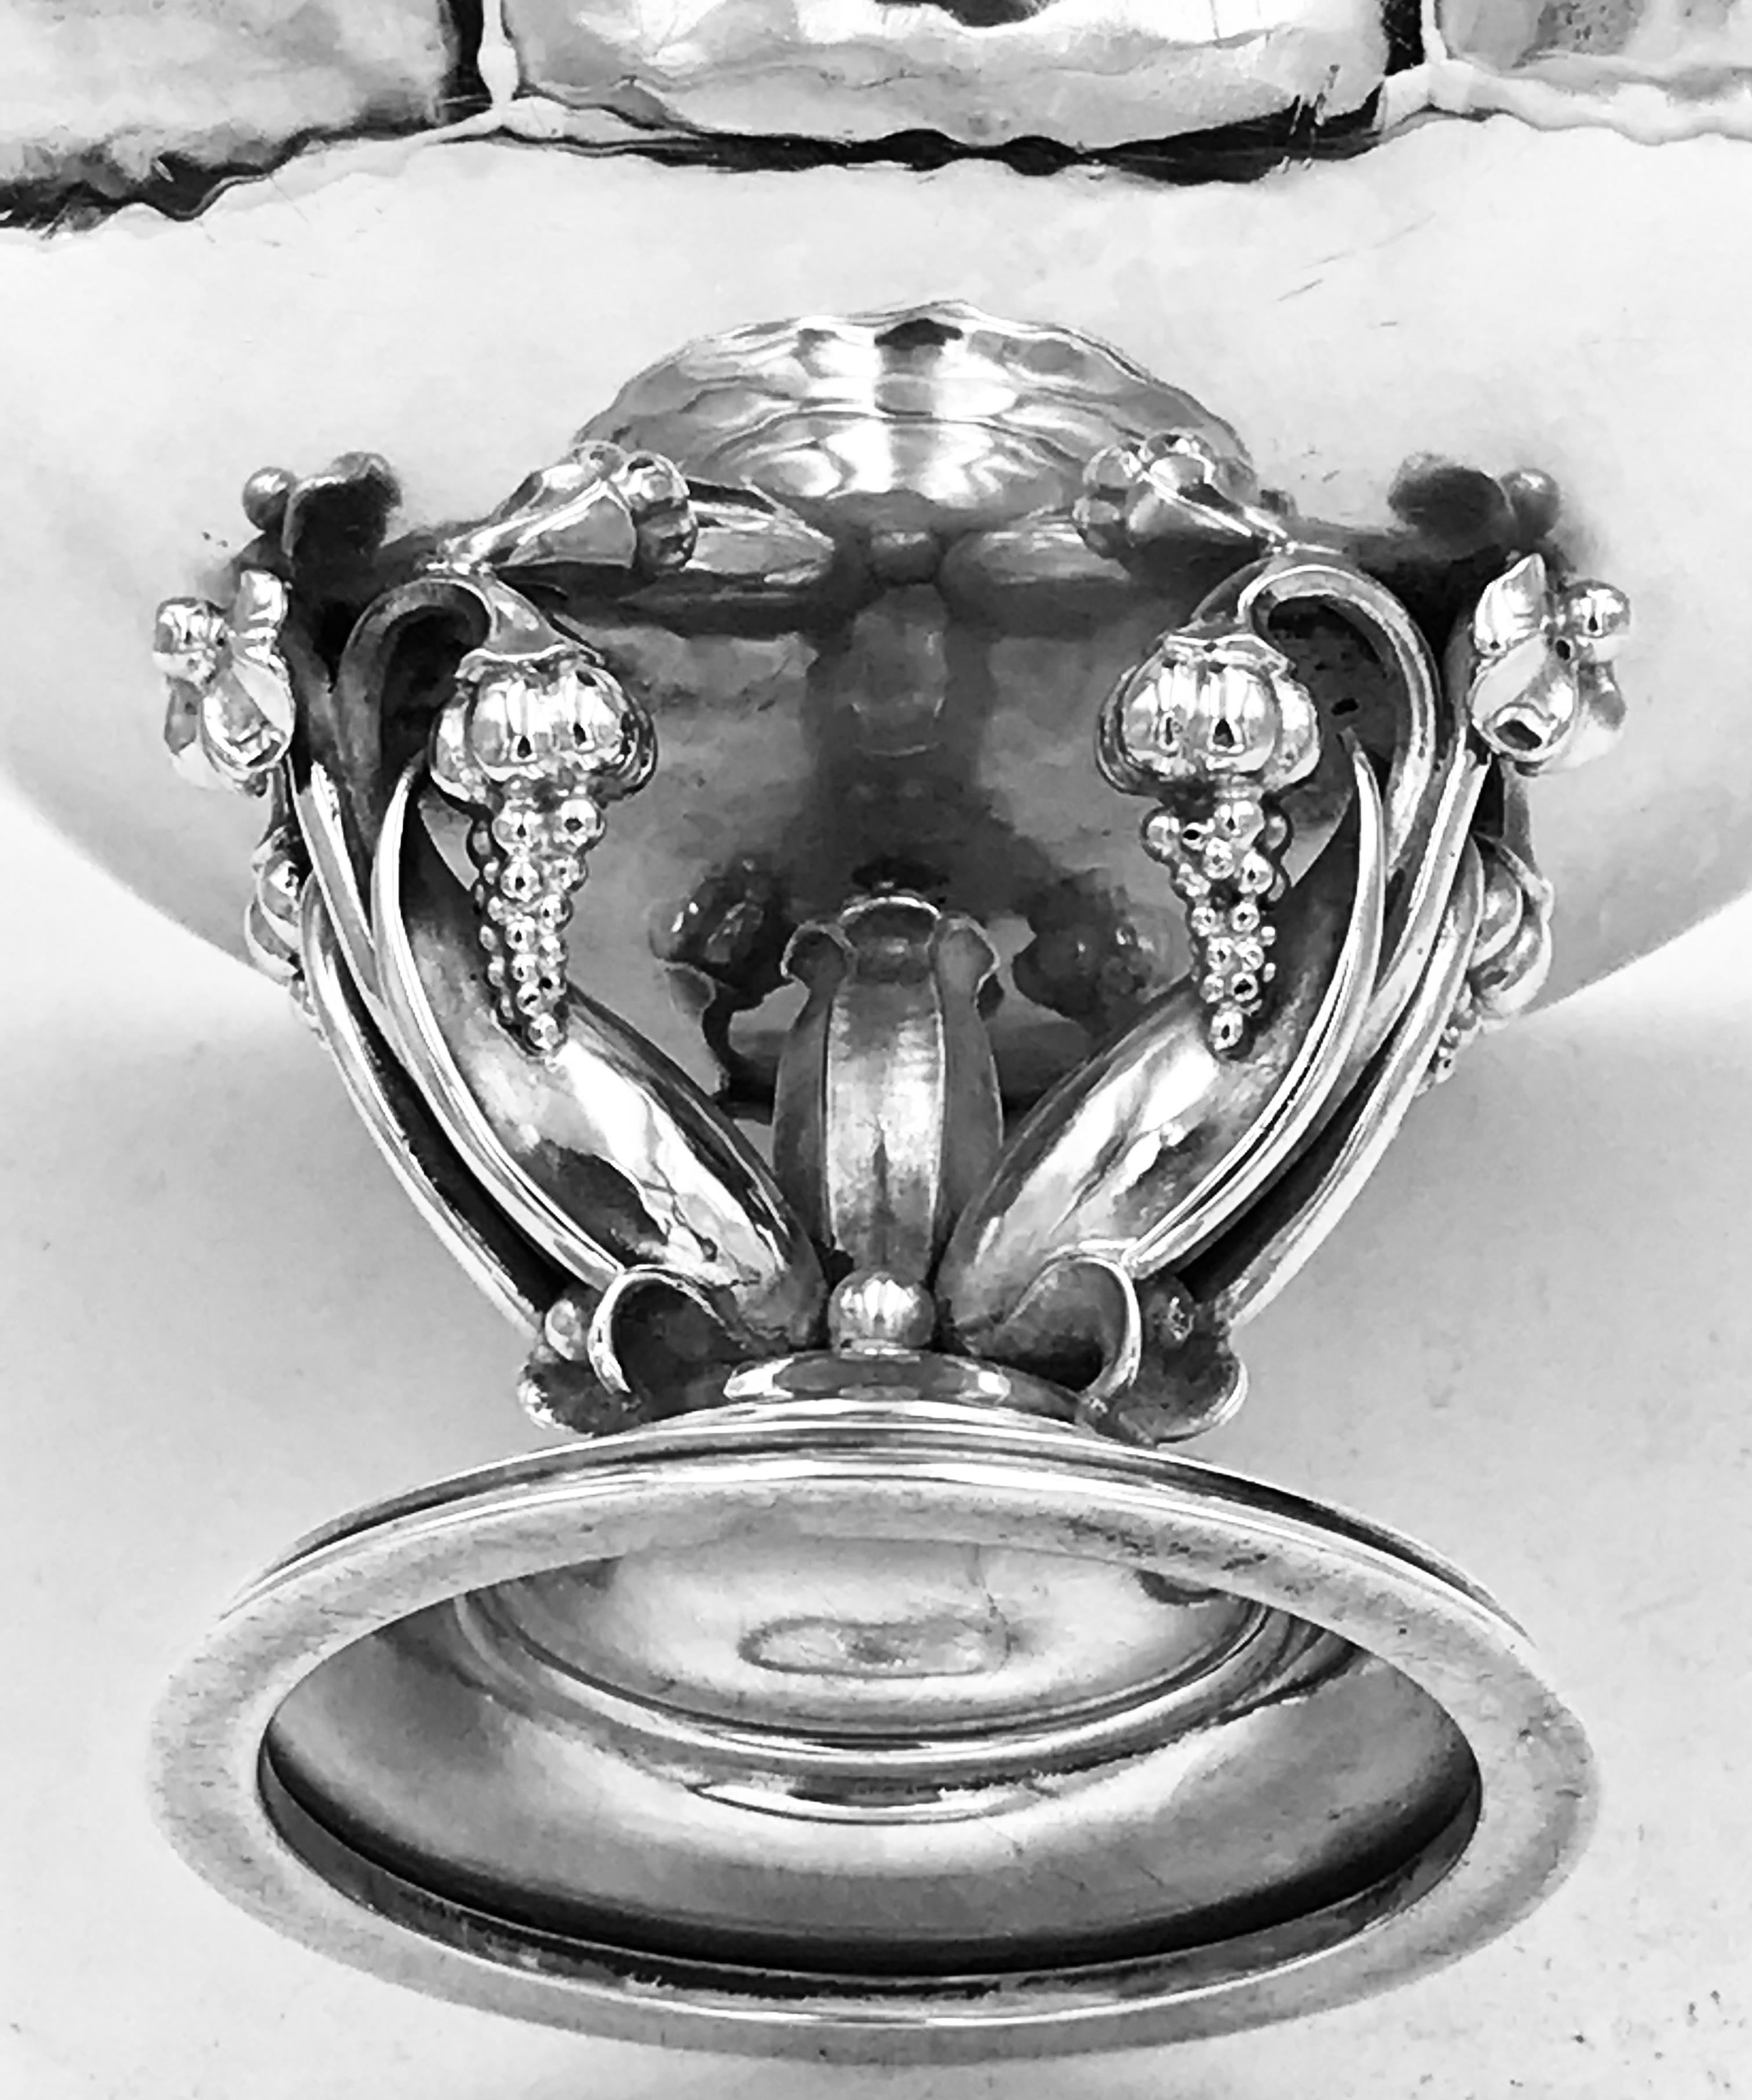 Un joli bol en argent Georg Jensen avec une décoration de raisins et de fleurs.
Ce bol a été conçu par Gundorph Albertus pour la société Georg Jensen.
Il porte une marque d'importation anglaise de 1930.